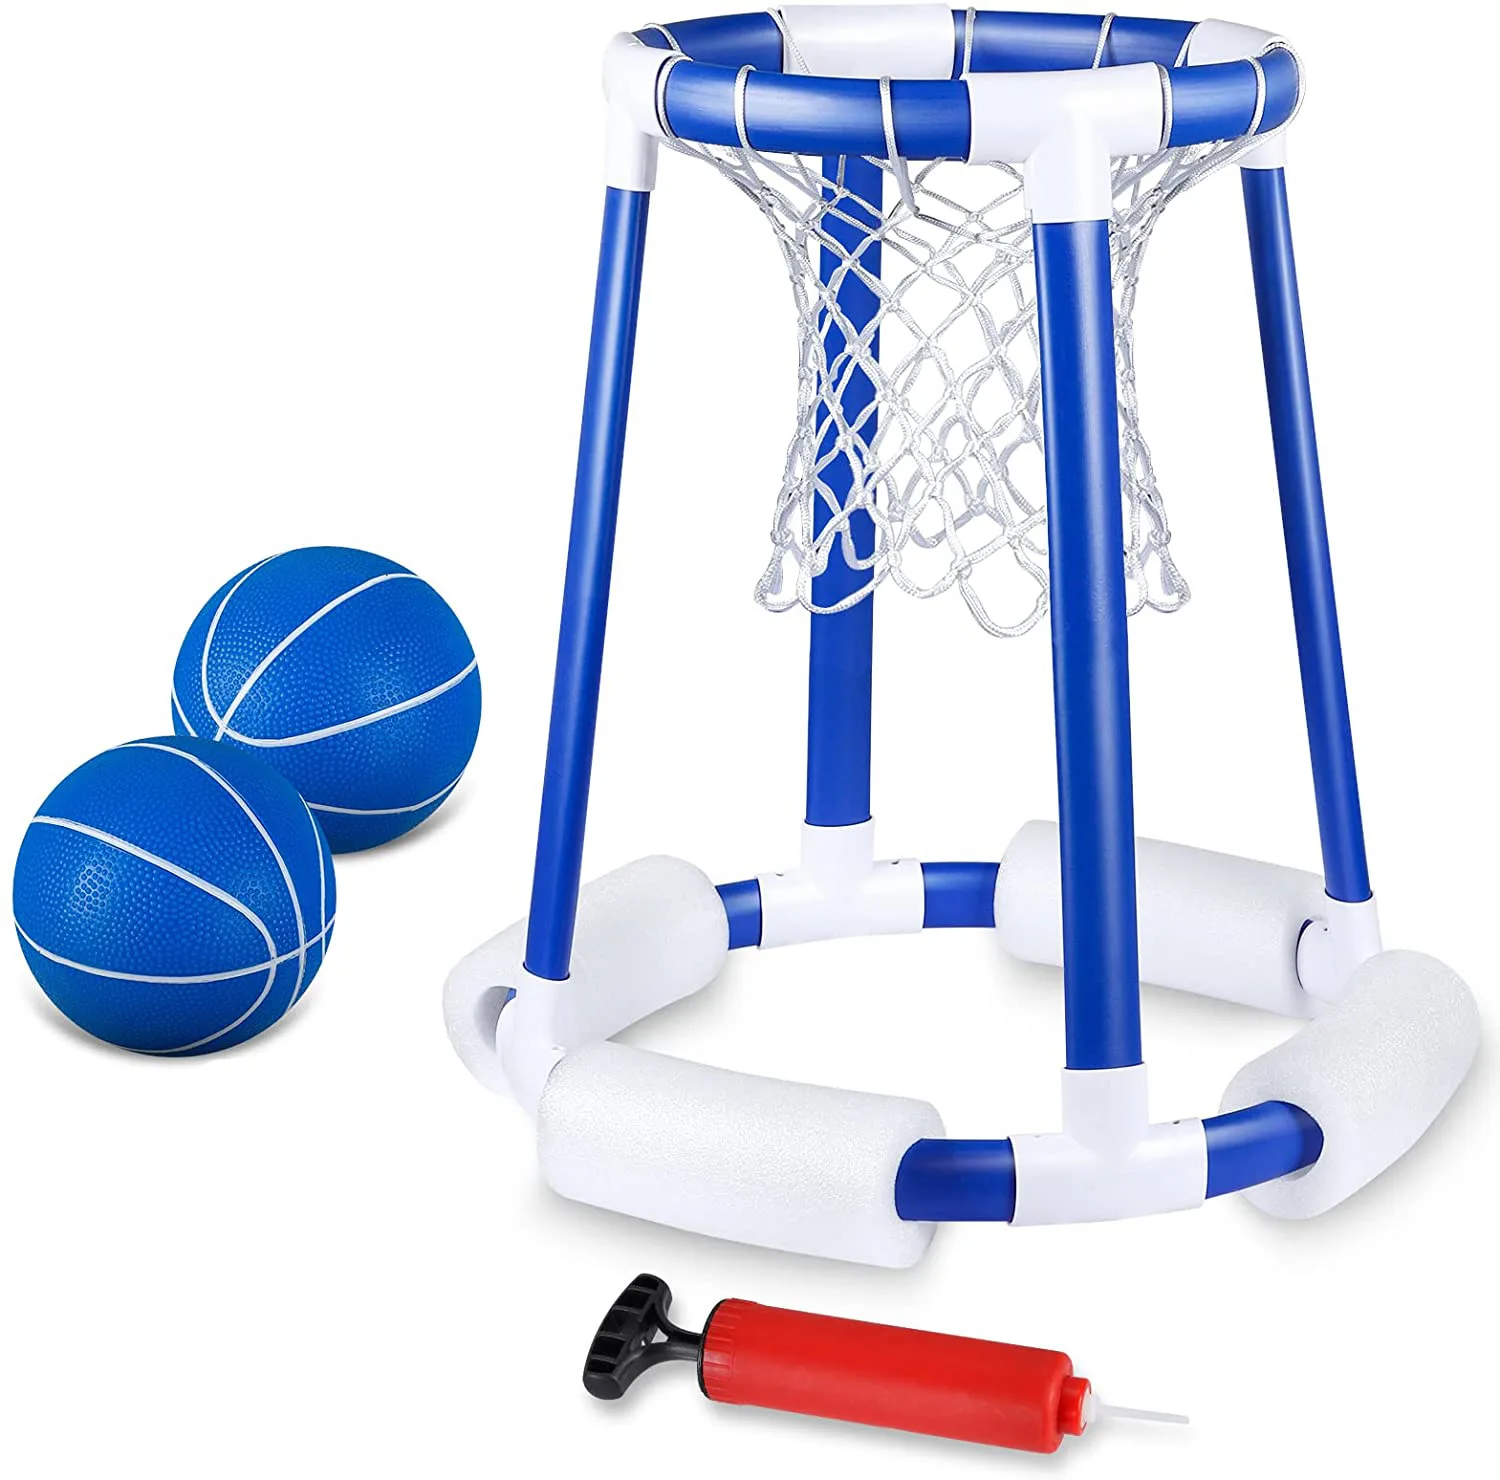 Спортивная игра в баскетбол, плавание, плавающее водное баскетбольное кольцо, игрушка для бассейна, надувные водные баскетбольные кольца для бассейна, игра в баскетбол